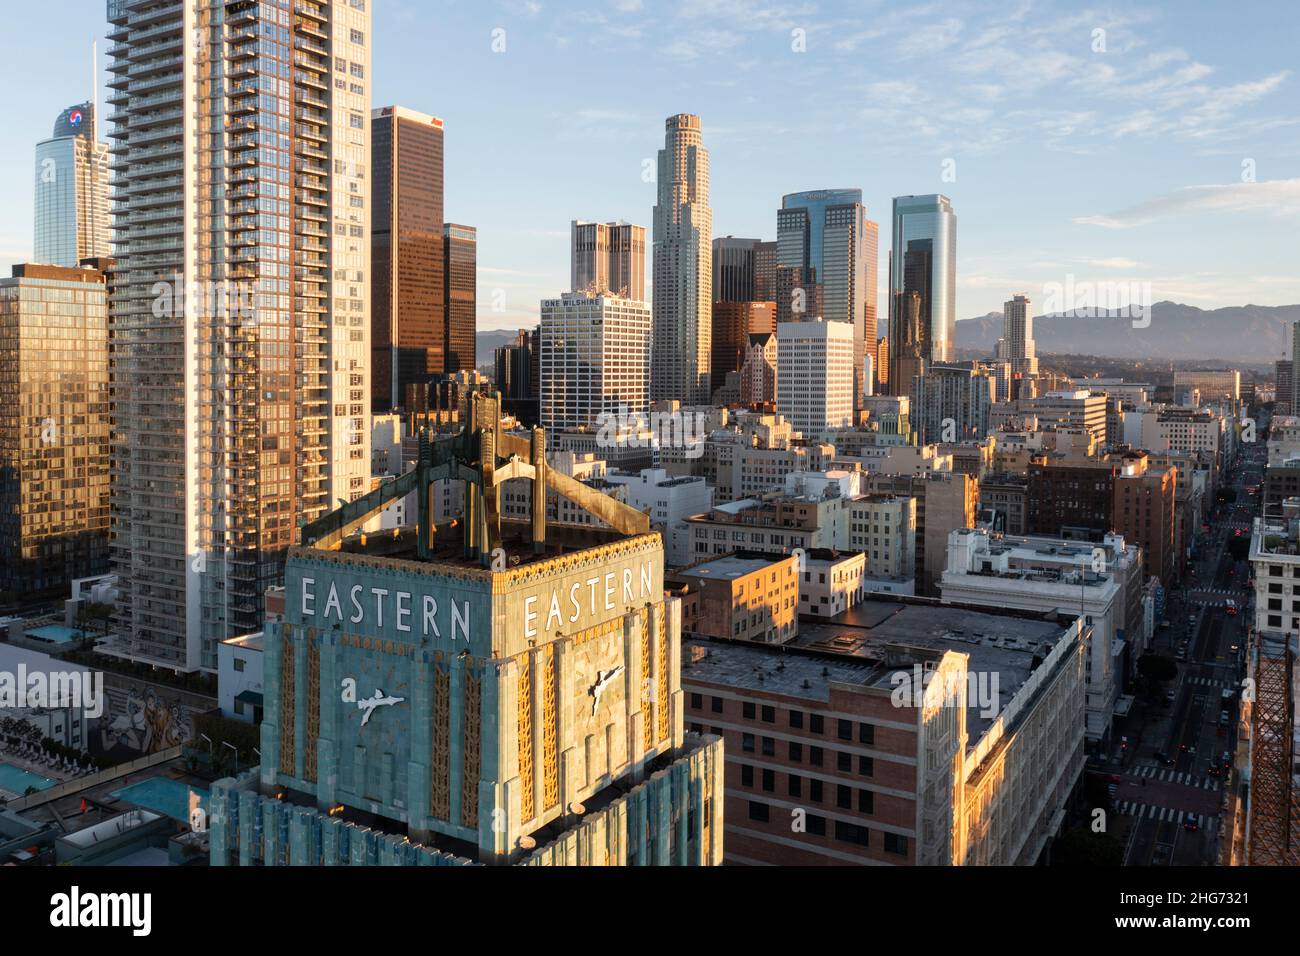 Vista dello storico edificio orientale e orologio nel centro di Los Angeles Foto Stock